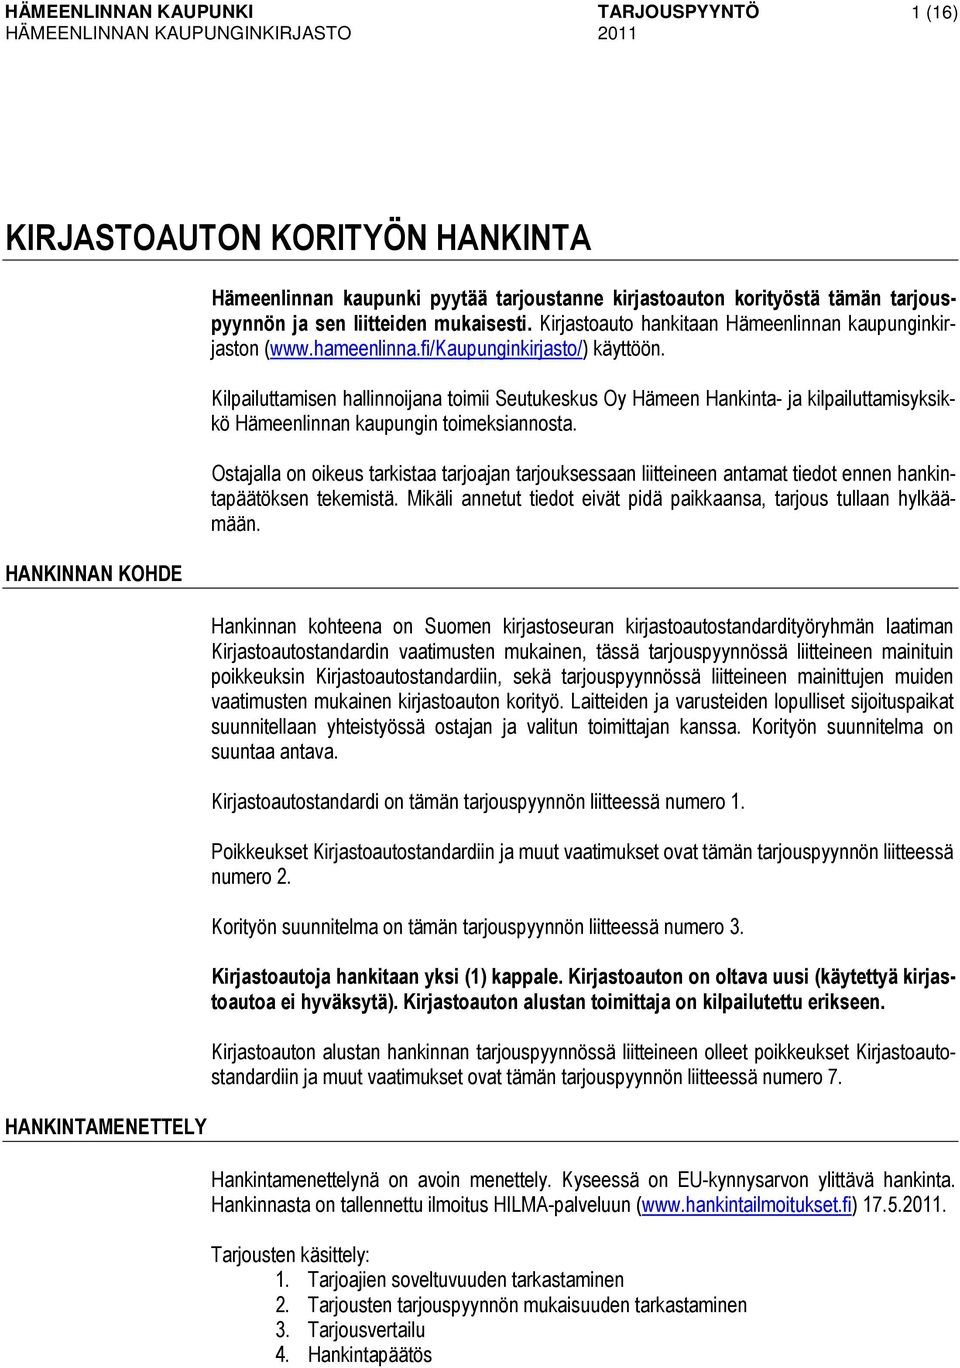 Kilpailuttamisen hallinnoijana toimii Seutukeskus Oy Hämeen Hankinta- ja kilpailuttamisyksikkö Hämeenlinnan kaupungin toimeksiannosta.